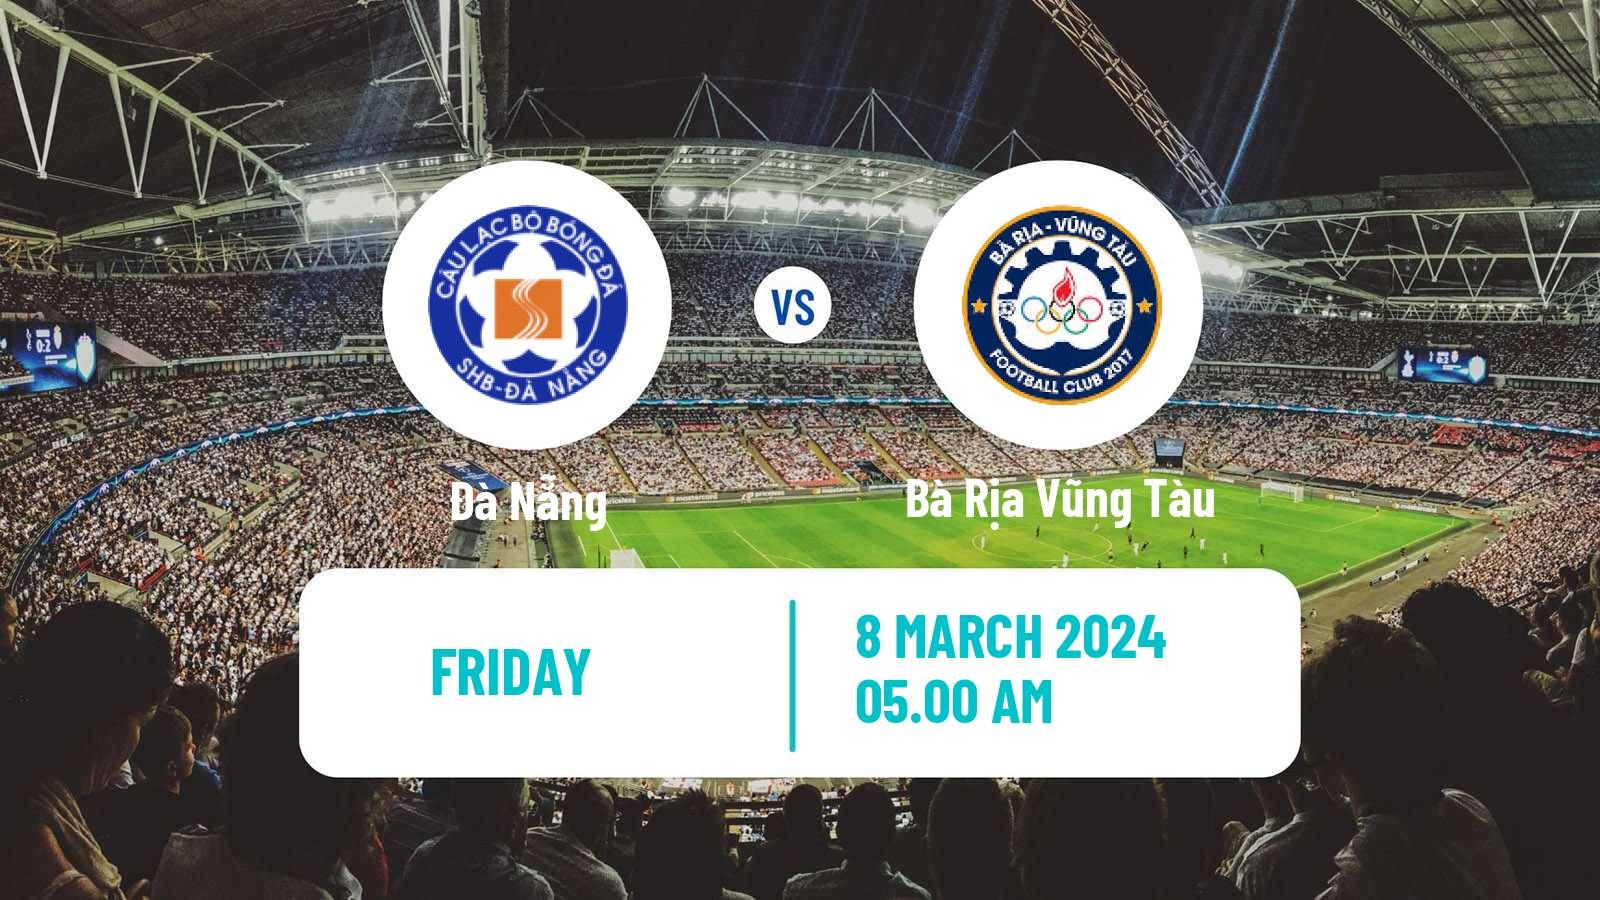 Soccer Vietnamese V League 2 Đà Nẵng - Bà Rịa Vũng Tàu